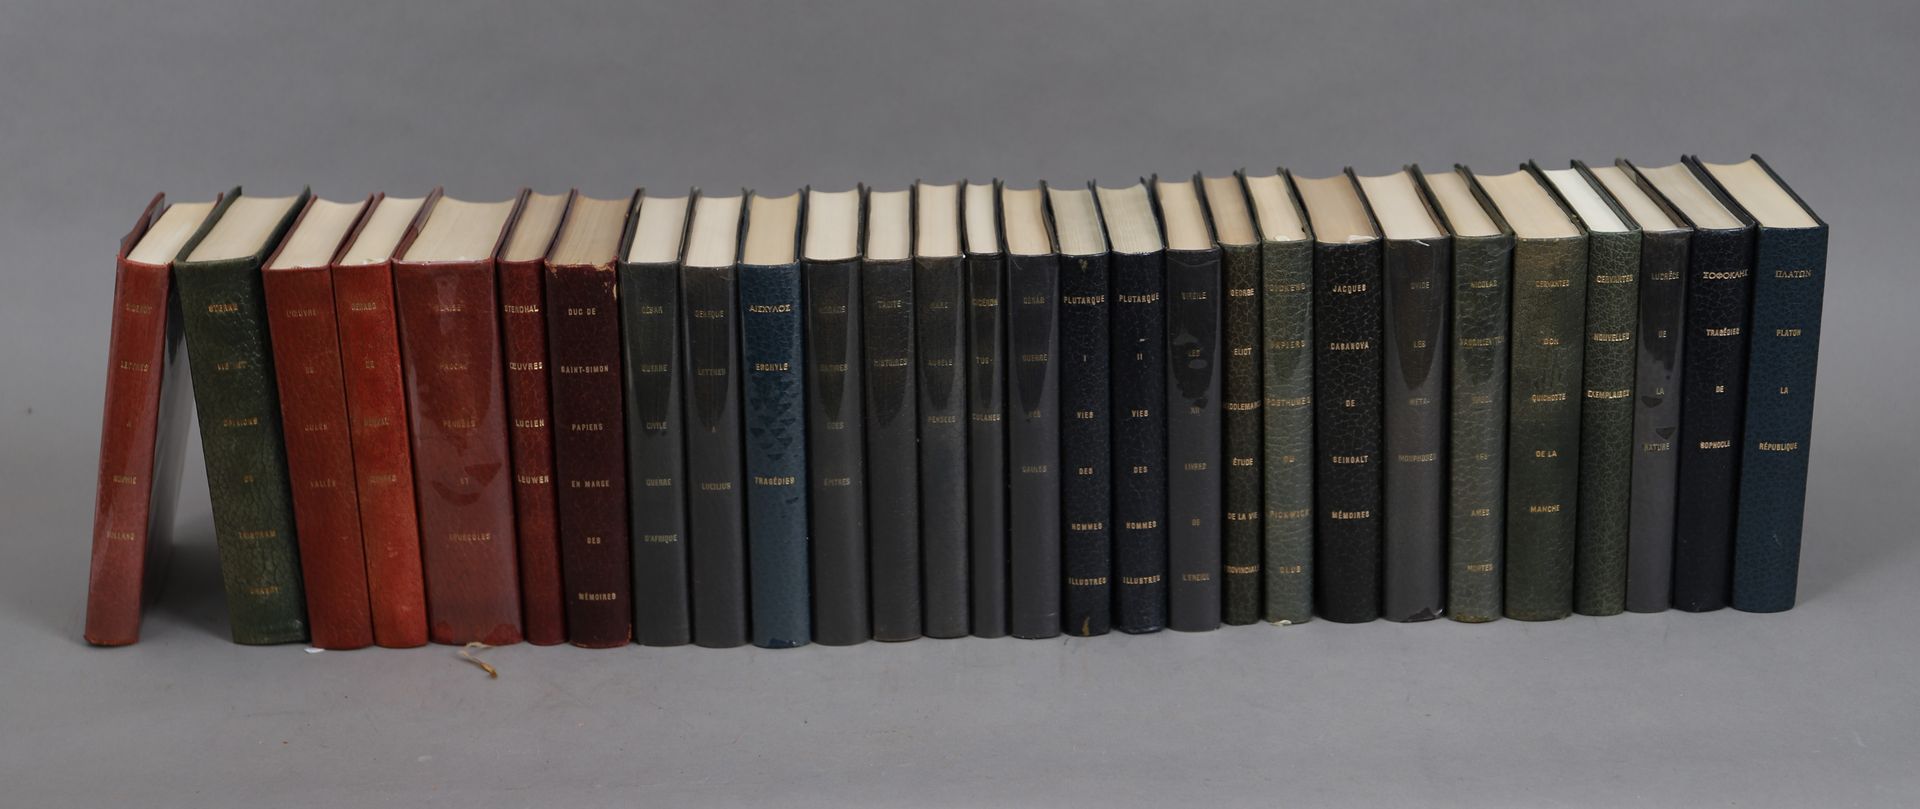 Null CLÁSICOS DE LA LITERATURA

LOTE de 28 volúmenes encuadernados. 

1965.